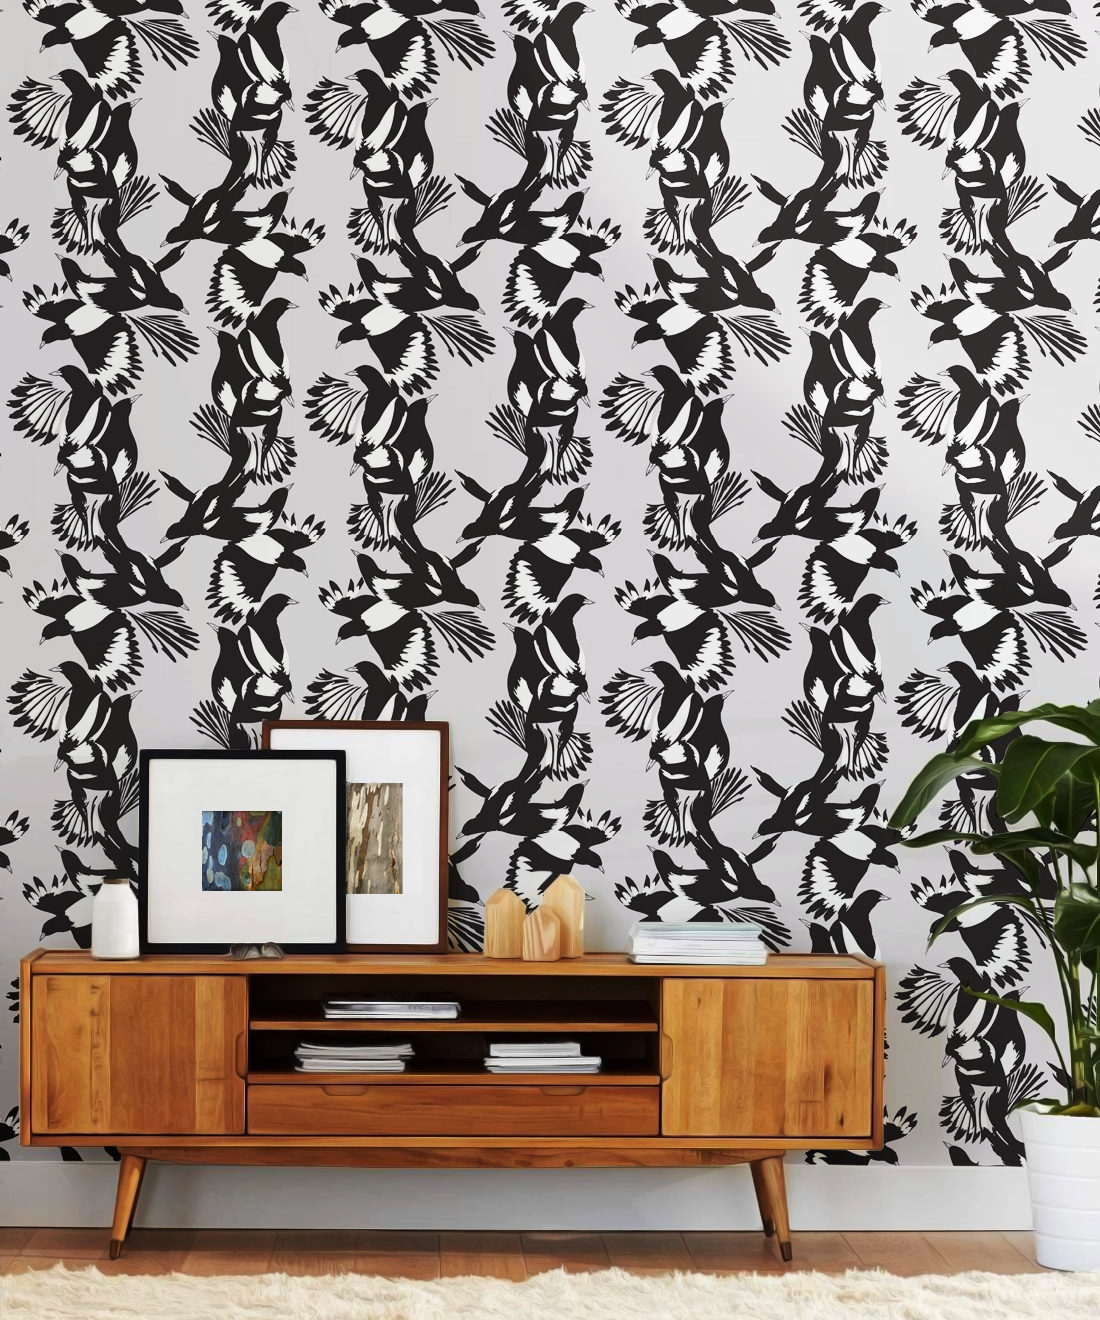 Magpie Wallpaper - Milton & King - Kingdom Home - Papier peint oiseaux - Insitu noir et blanc